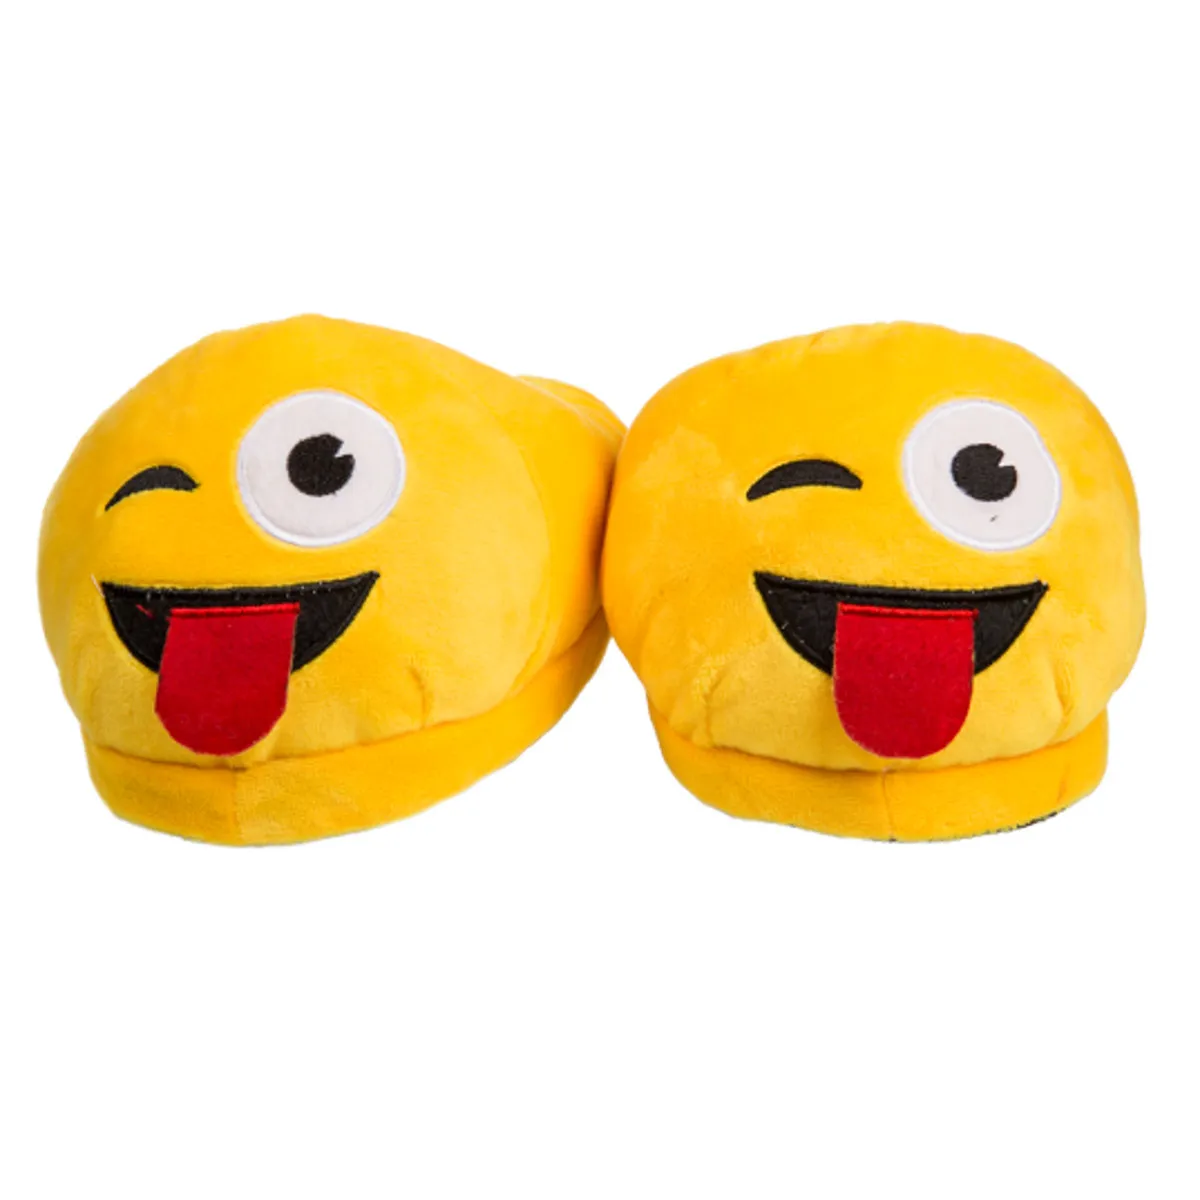 Kuschel-Hausschuhe Emoji – ausgestreckte Zunge 37-38